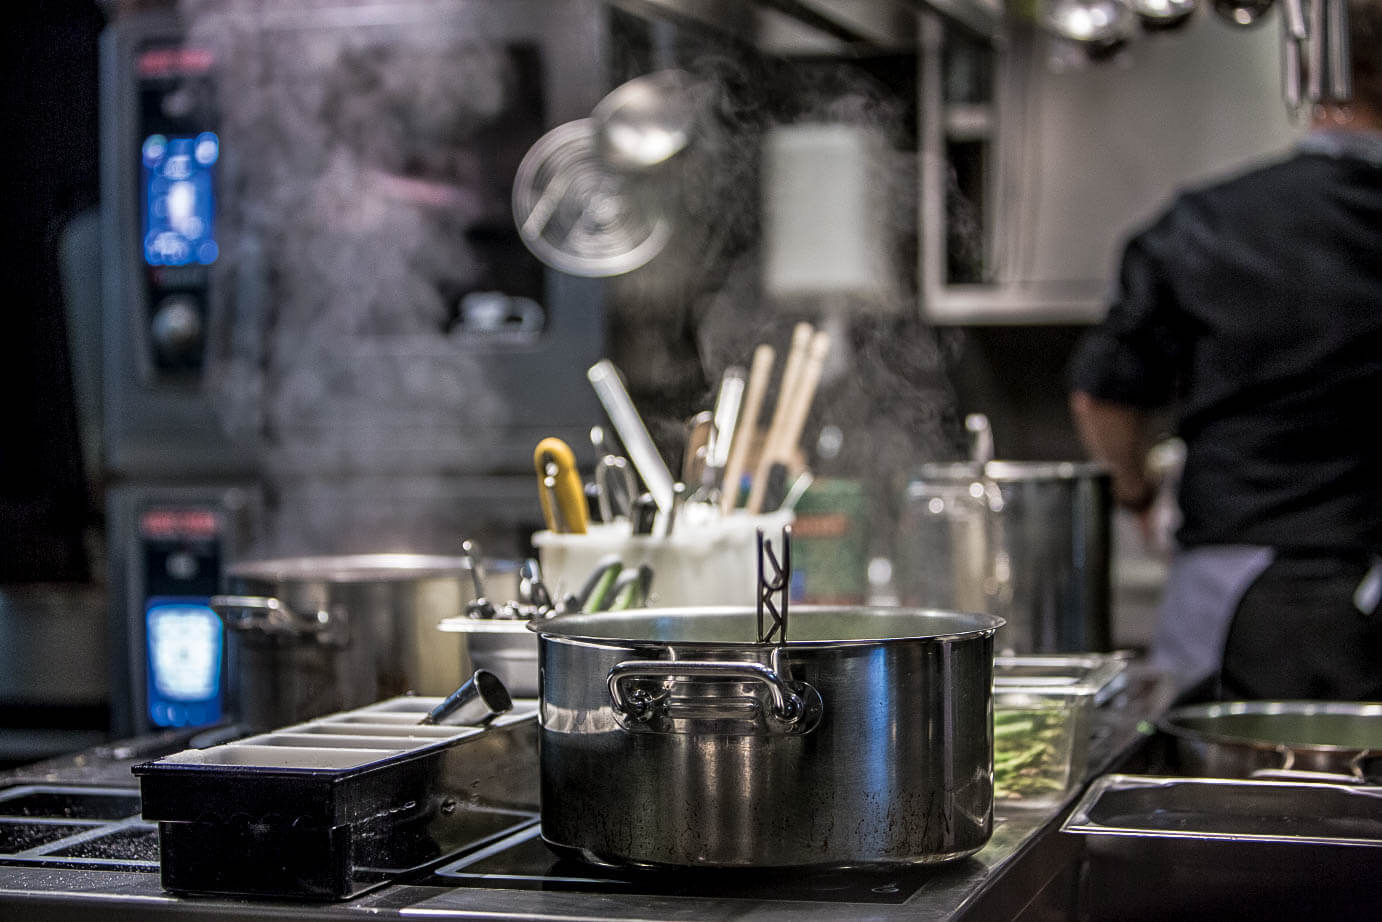 Blick in eine professionelle Küche - wo der Fachkräftemangel zunehmend zum Problem wird.